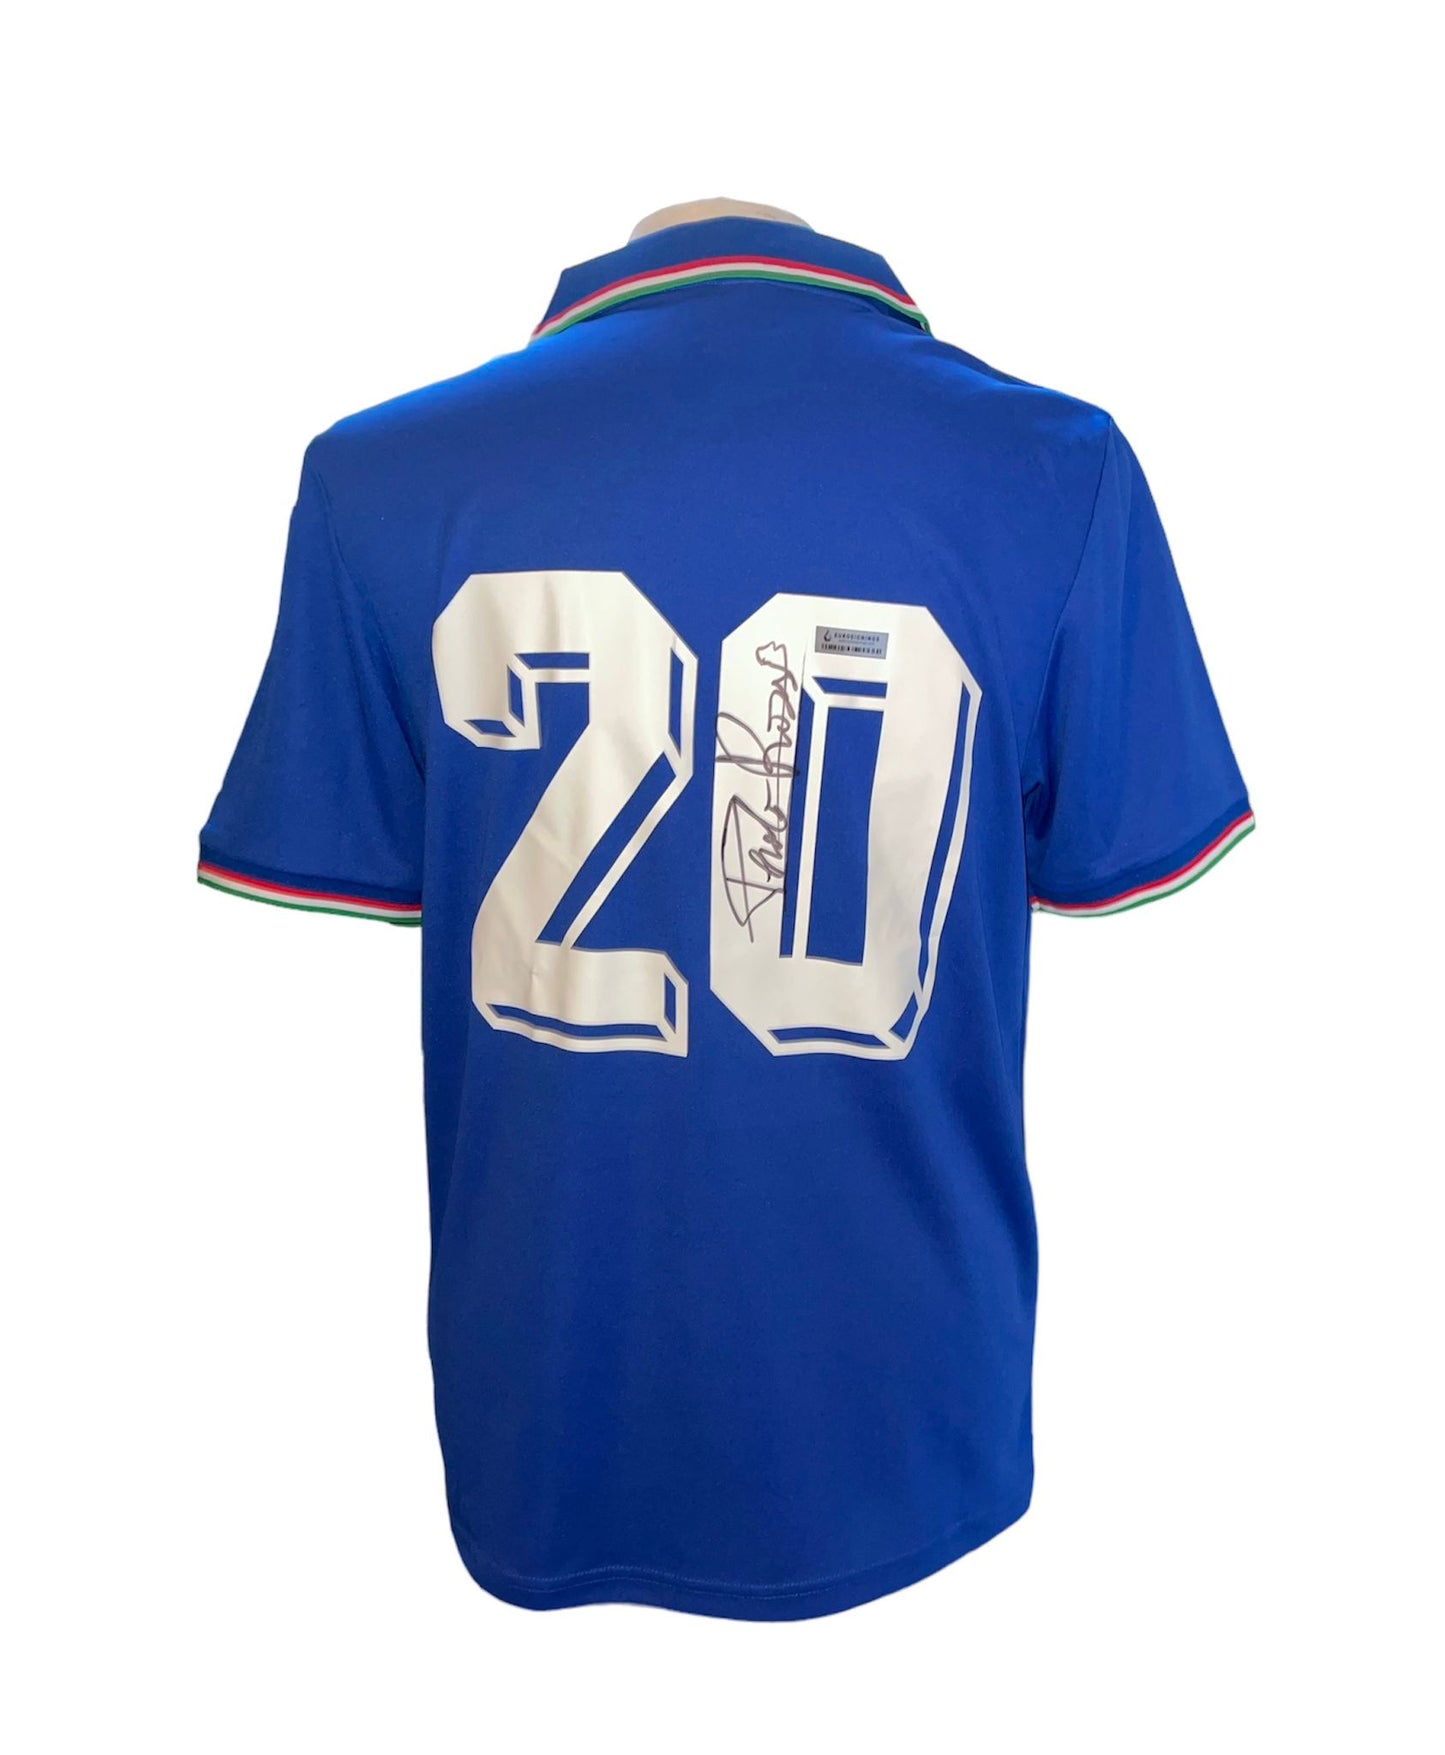 Paolo Rossi Italië gesigneerd 1982 shirt met certificaat